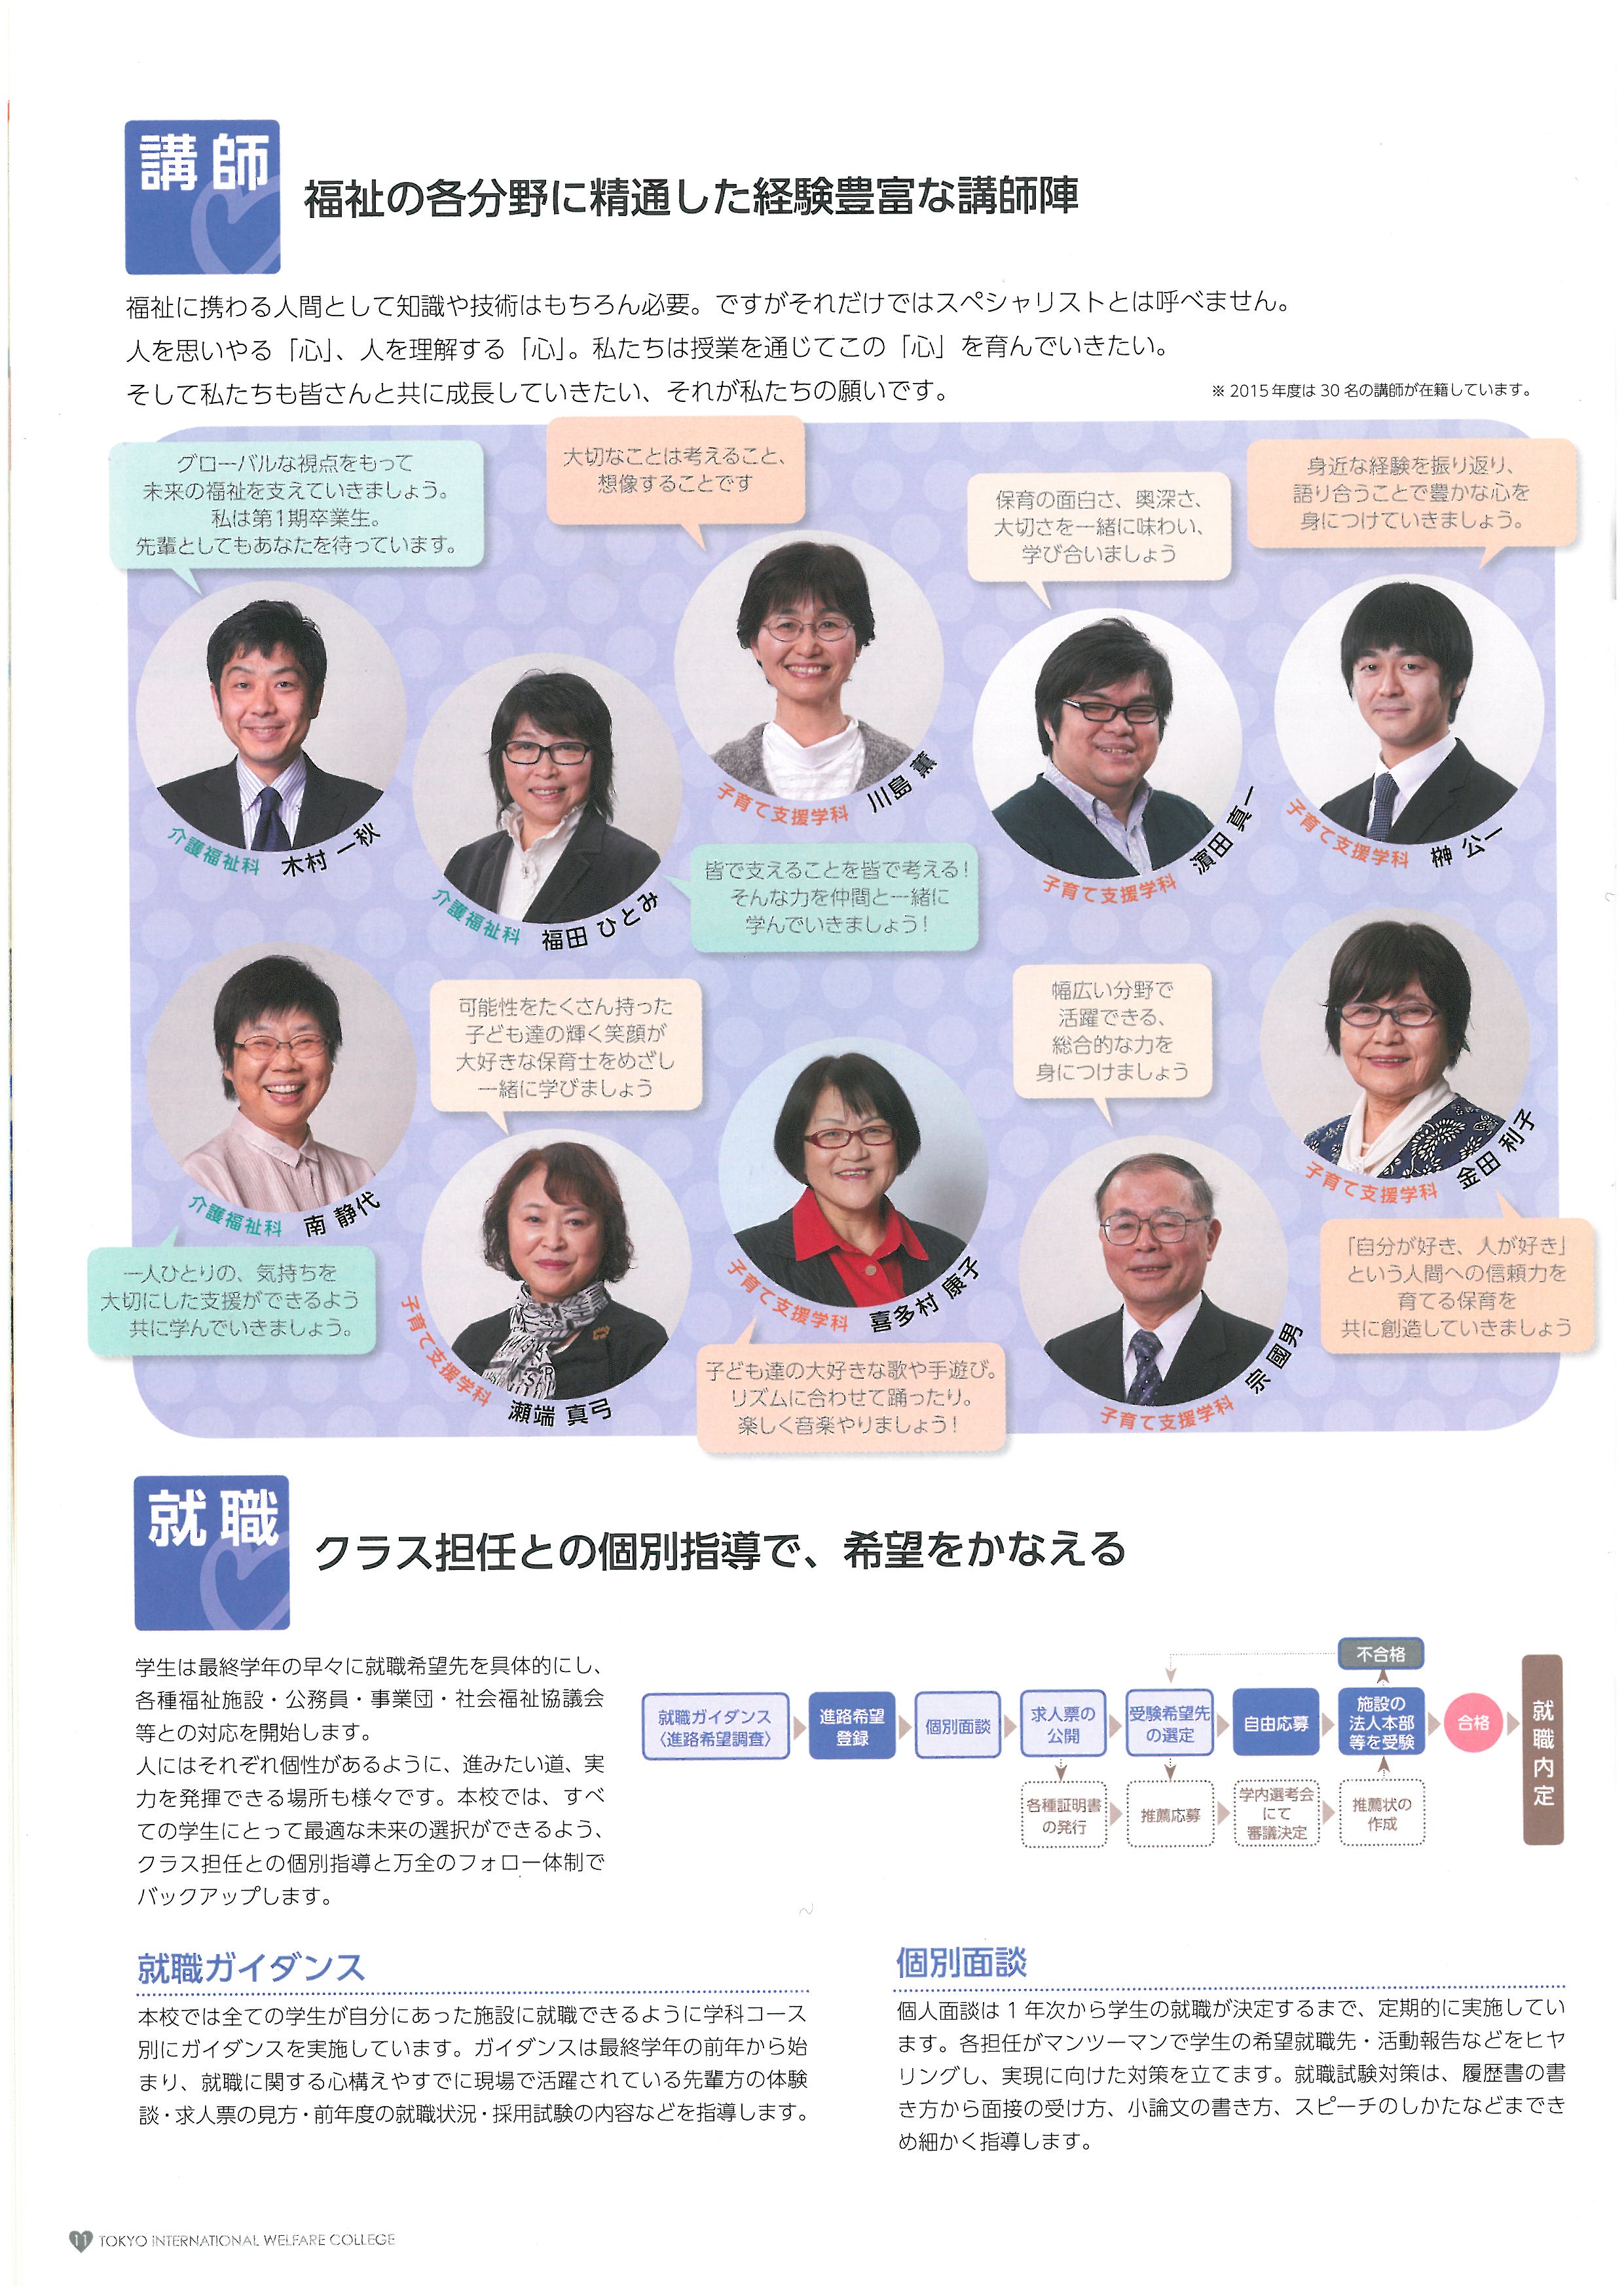 도쿄 국제복지전문학교 홍보 팜플렛 12.jpg